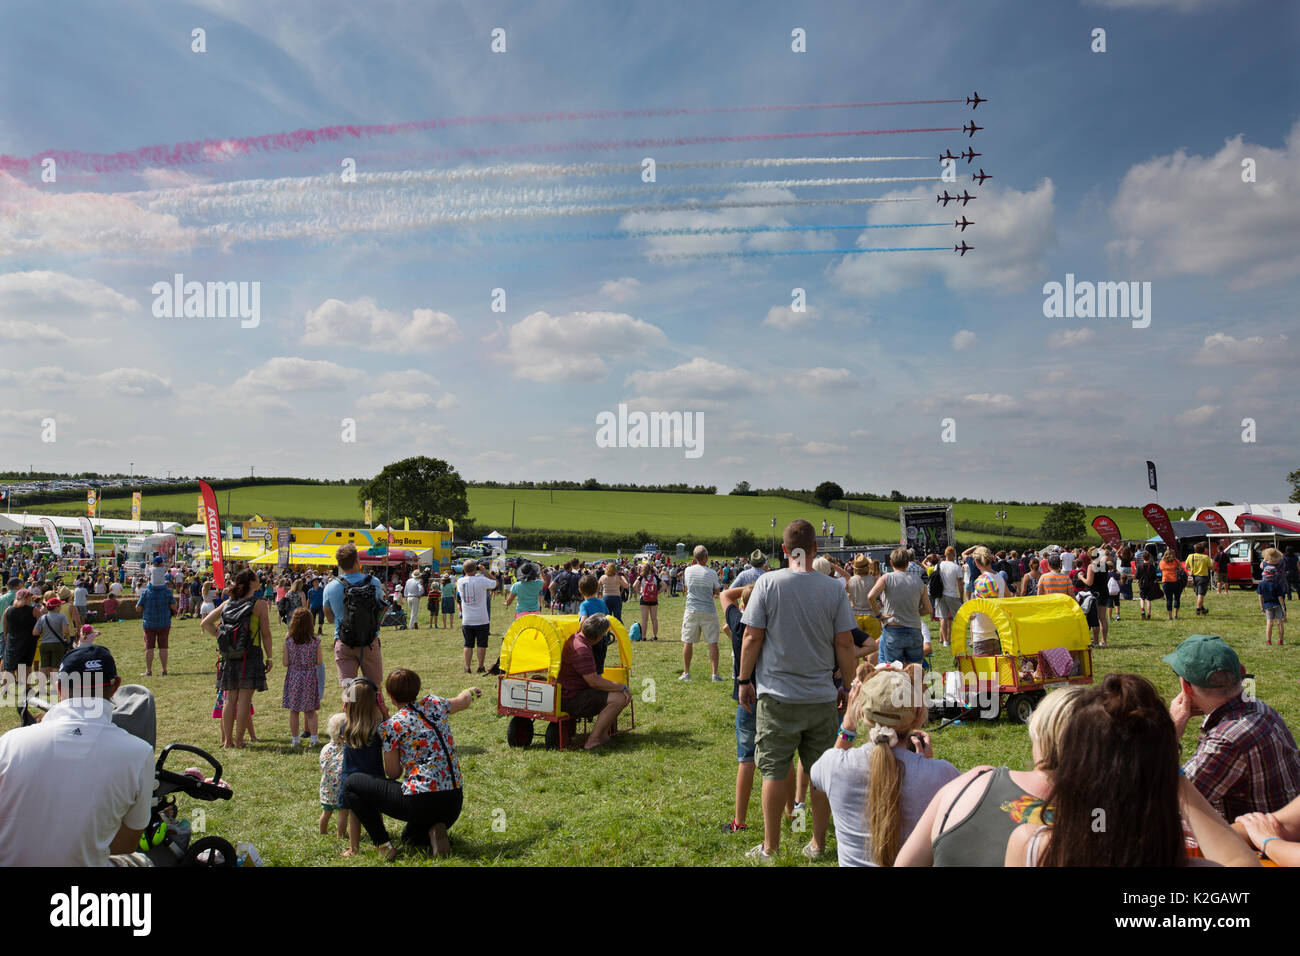 Le frecce rosse display aria a sud CARFEST 2017, Car-Fest, annuale motoring festival tenutosi in Hampshire, fondata da radio presenter Chris Evans, England Regno Unito Foto Stock